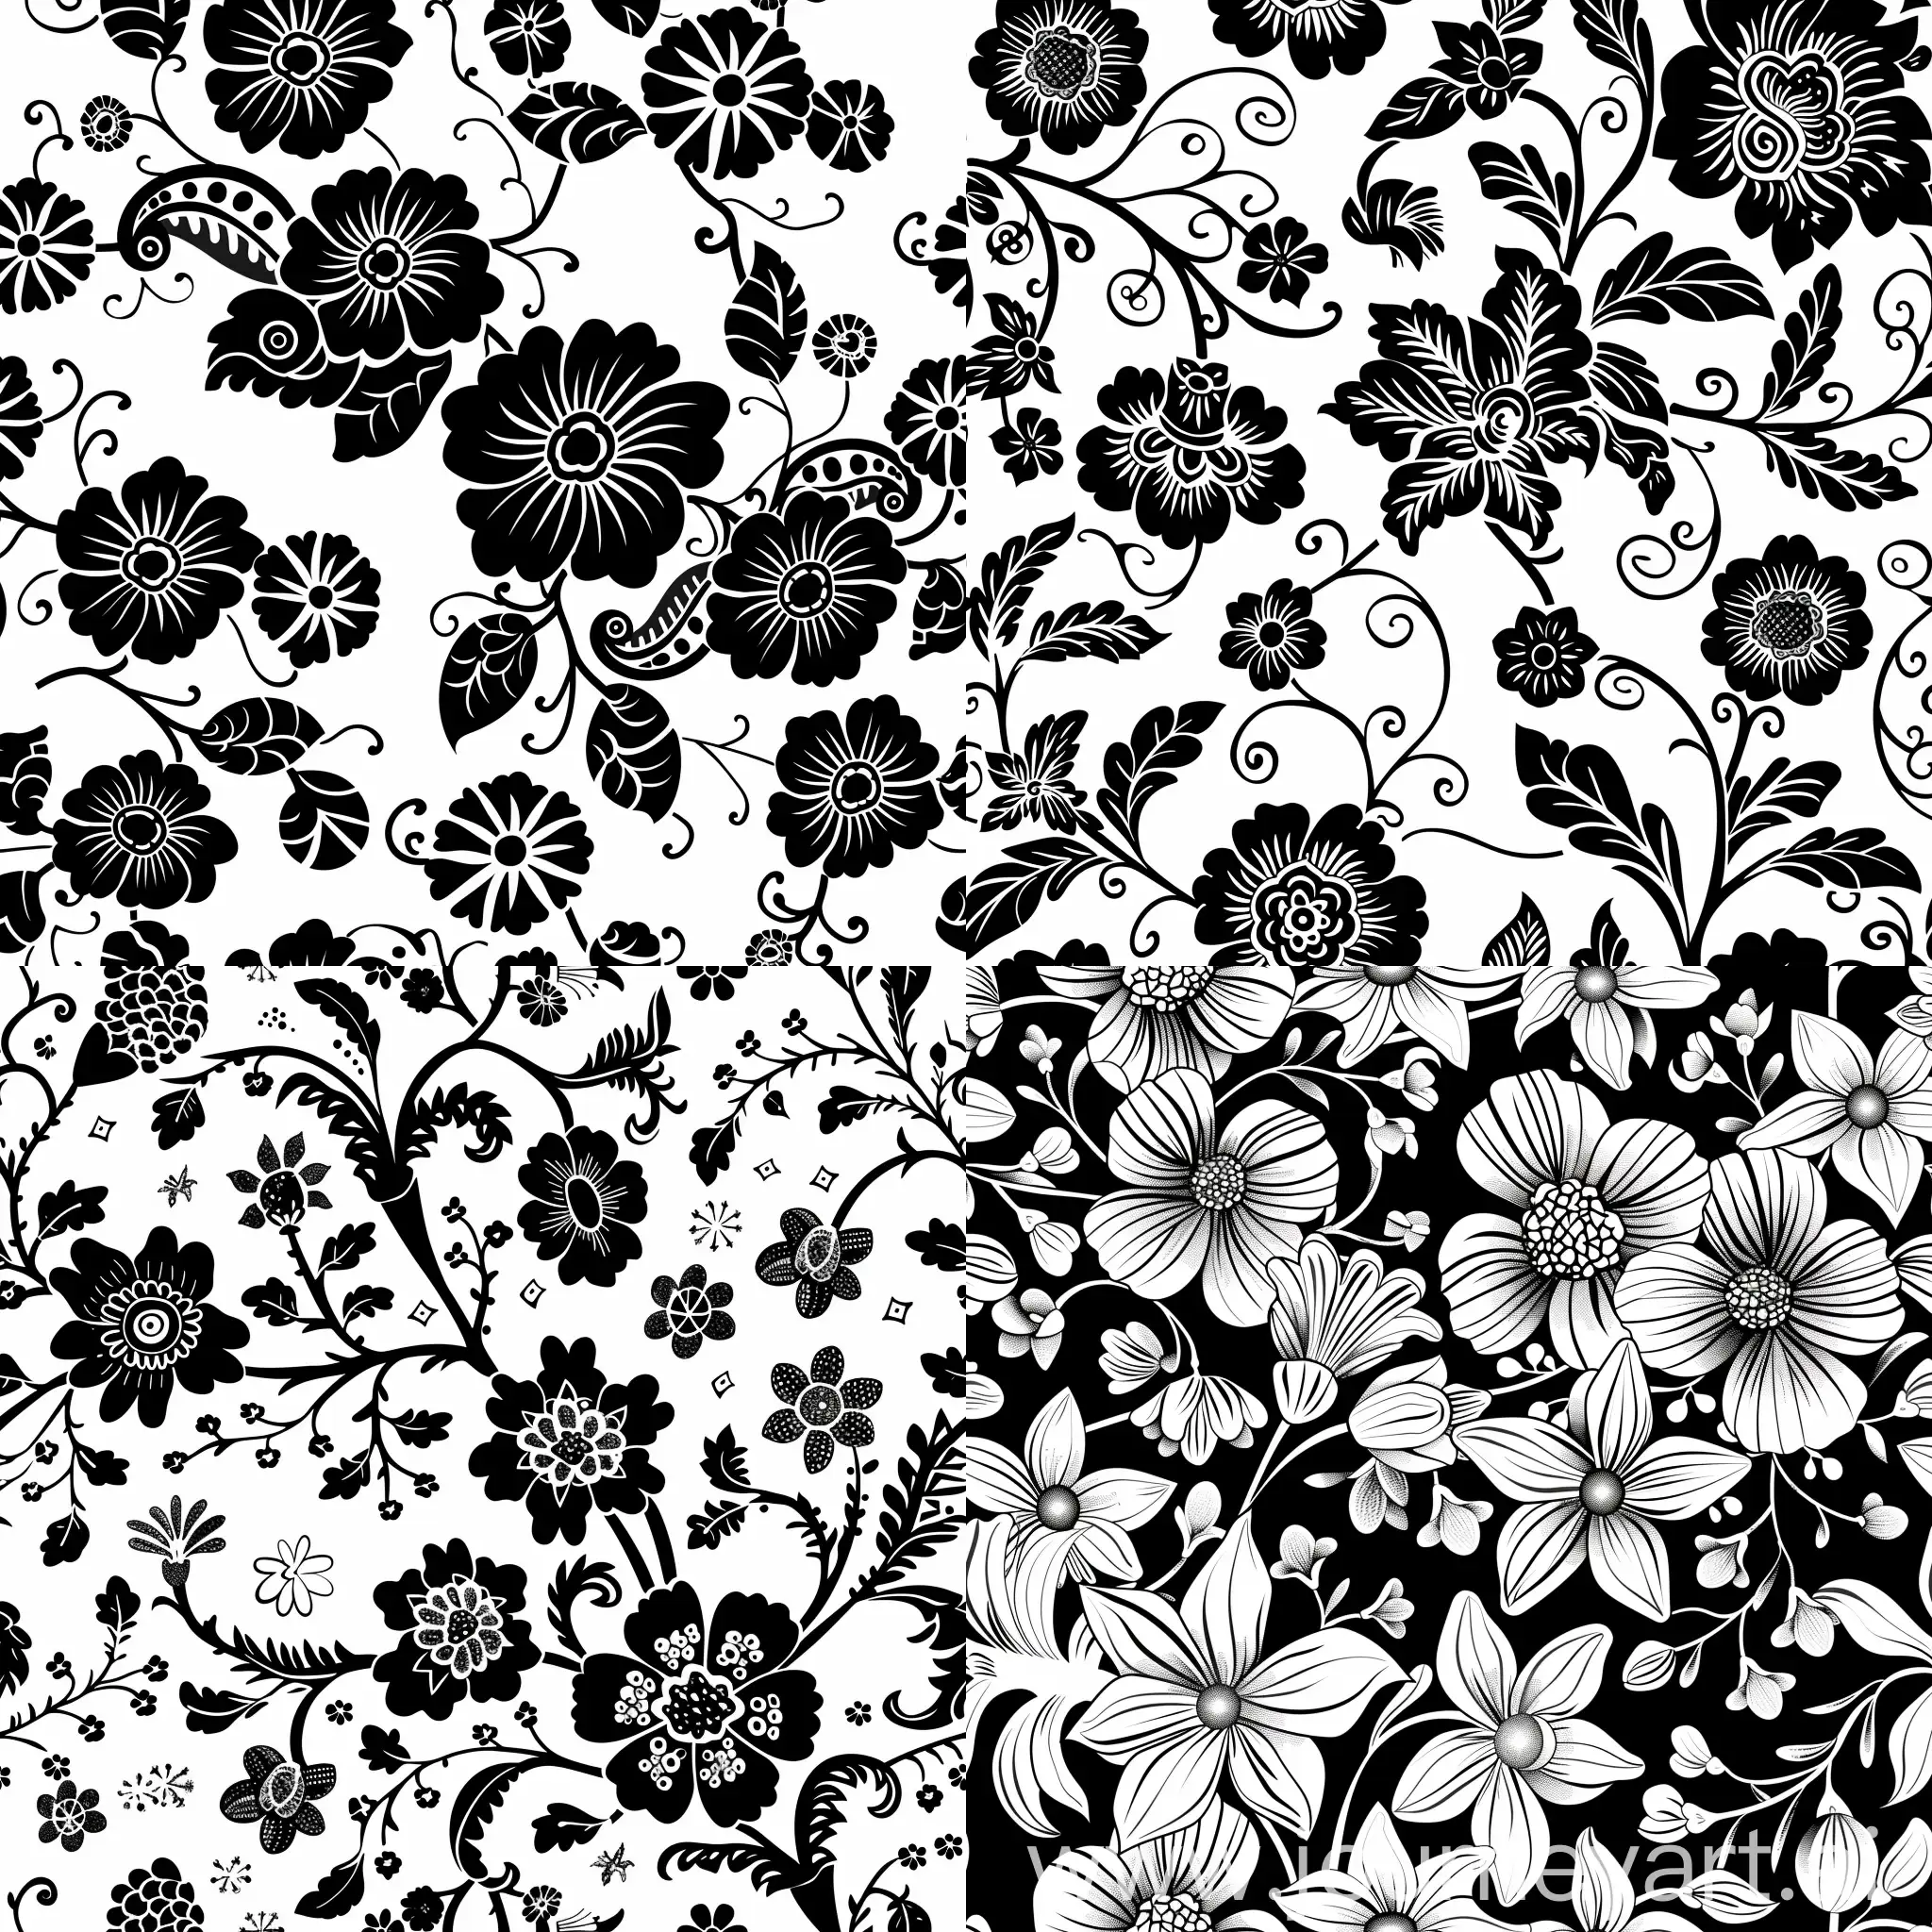 Stylized-Batik-Flower-Pattern-in-Monochrome-for-Versatile-Tiling